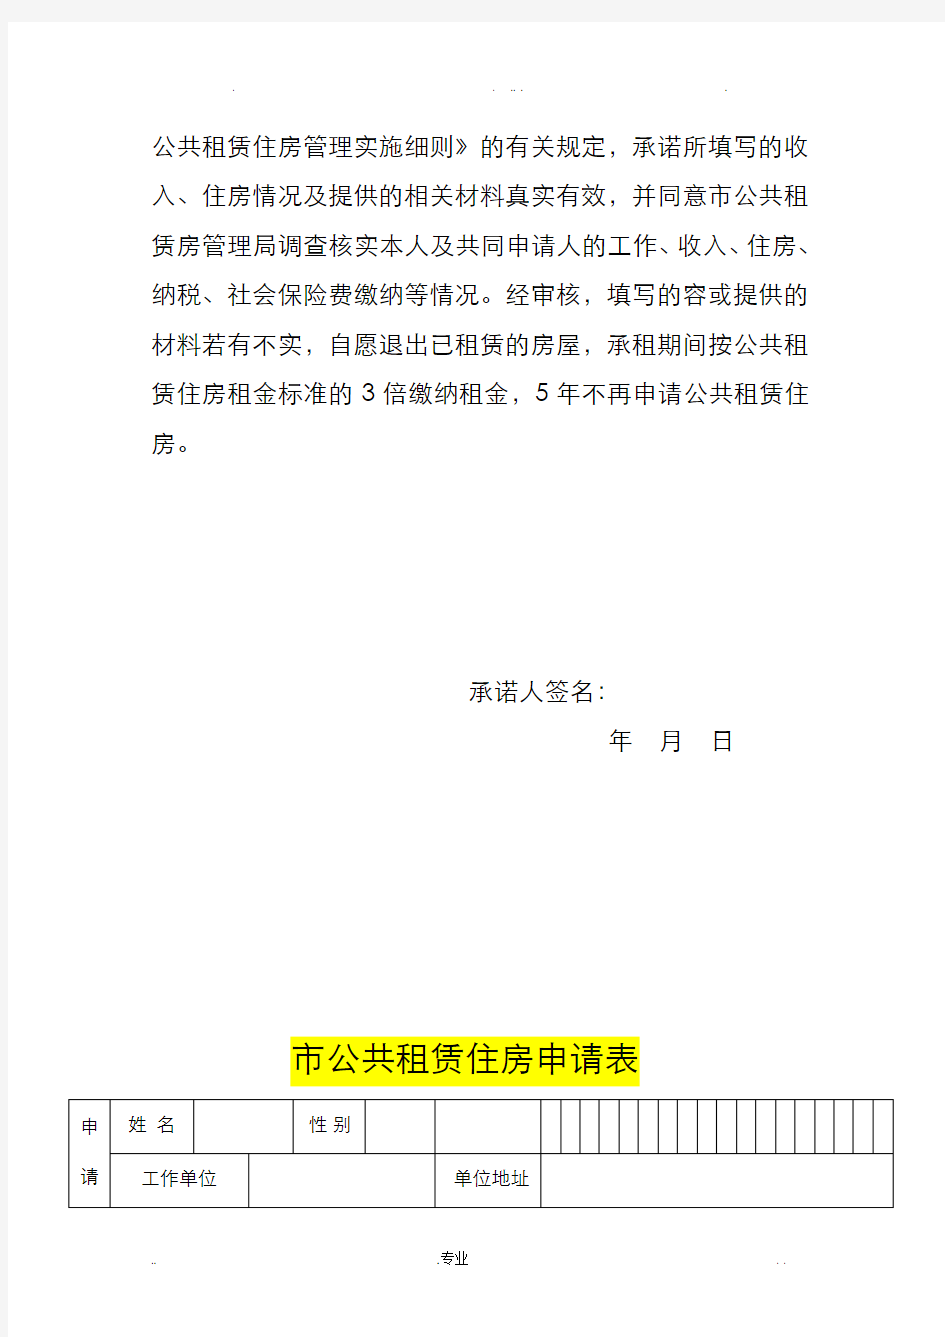 重庆市公共租赁房申请表(全套)